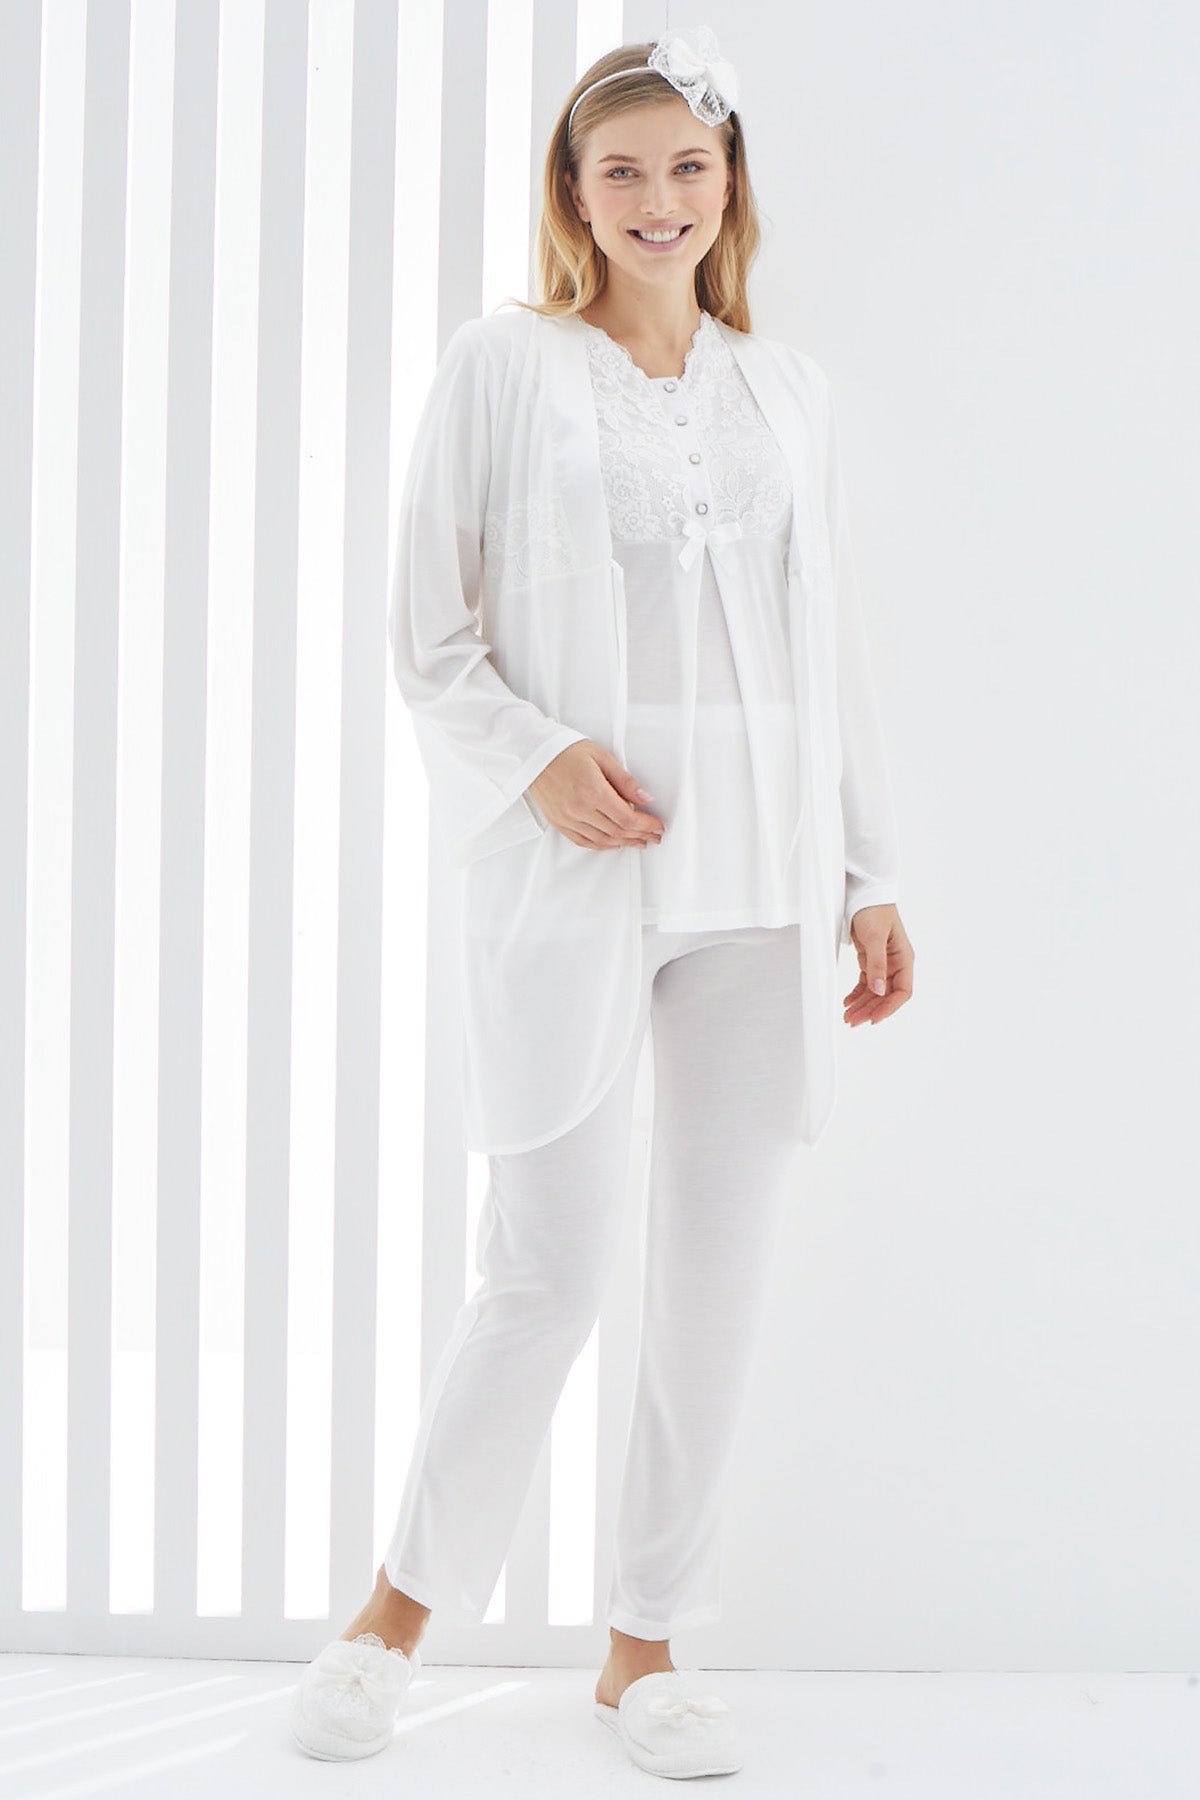 Lace Collar 3-Pieces Maternity & Nursing Pajamas With Robe Ecru - 3410